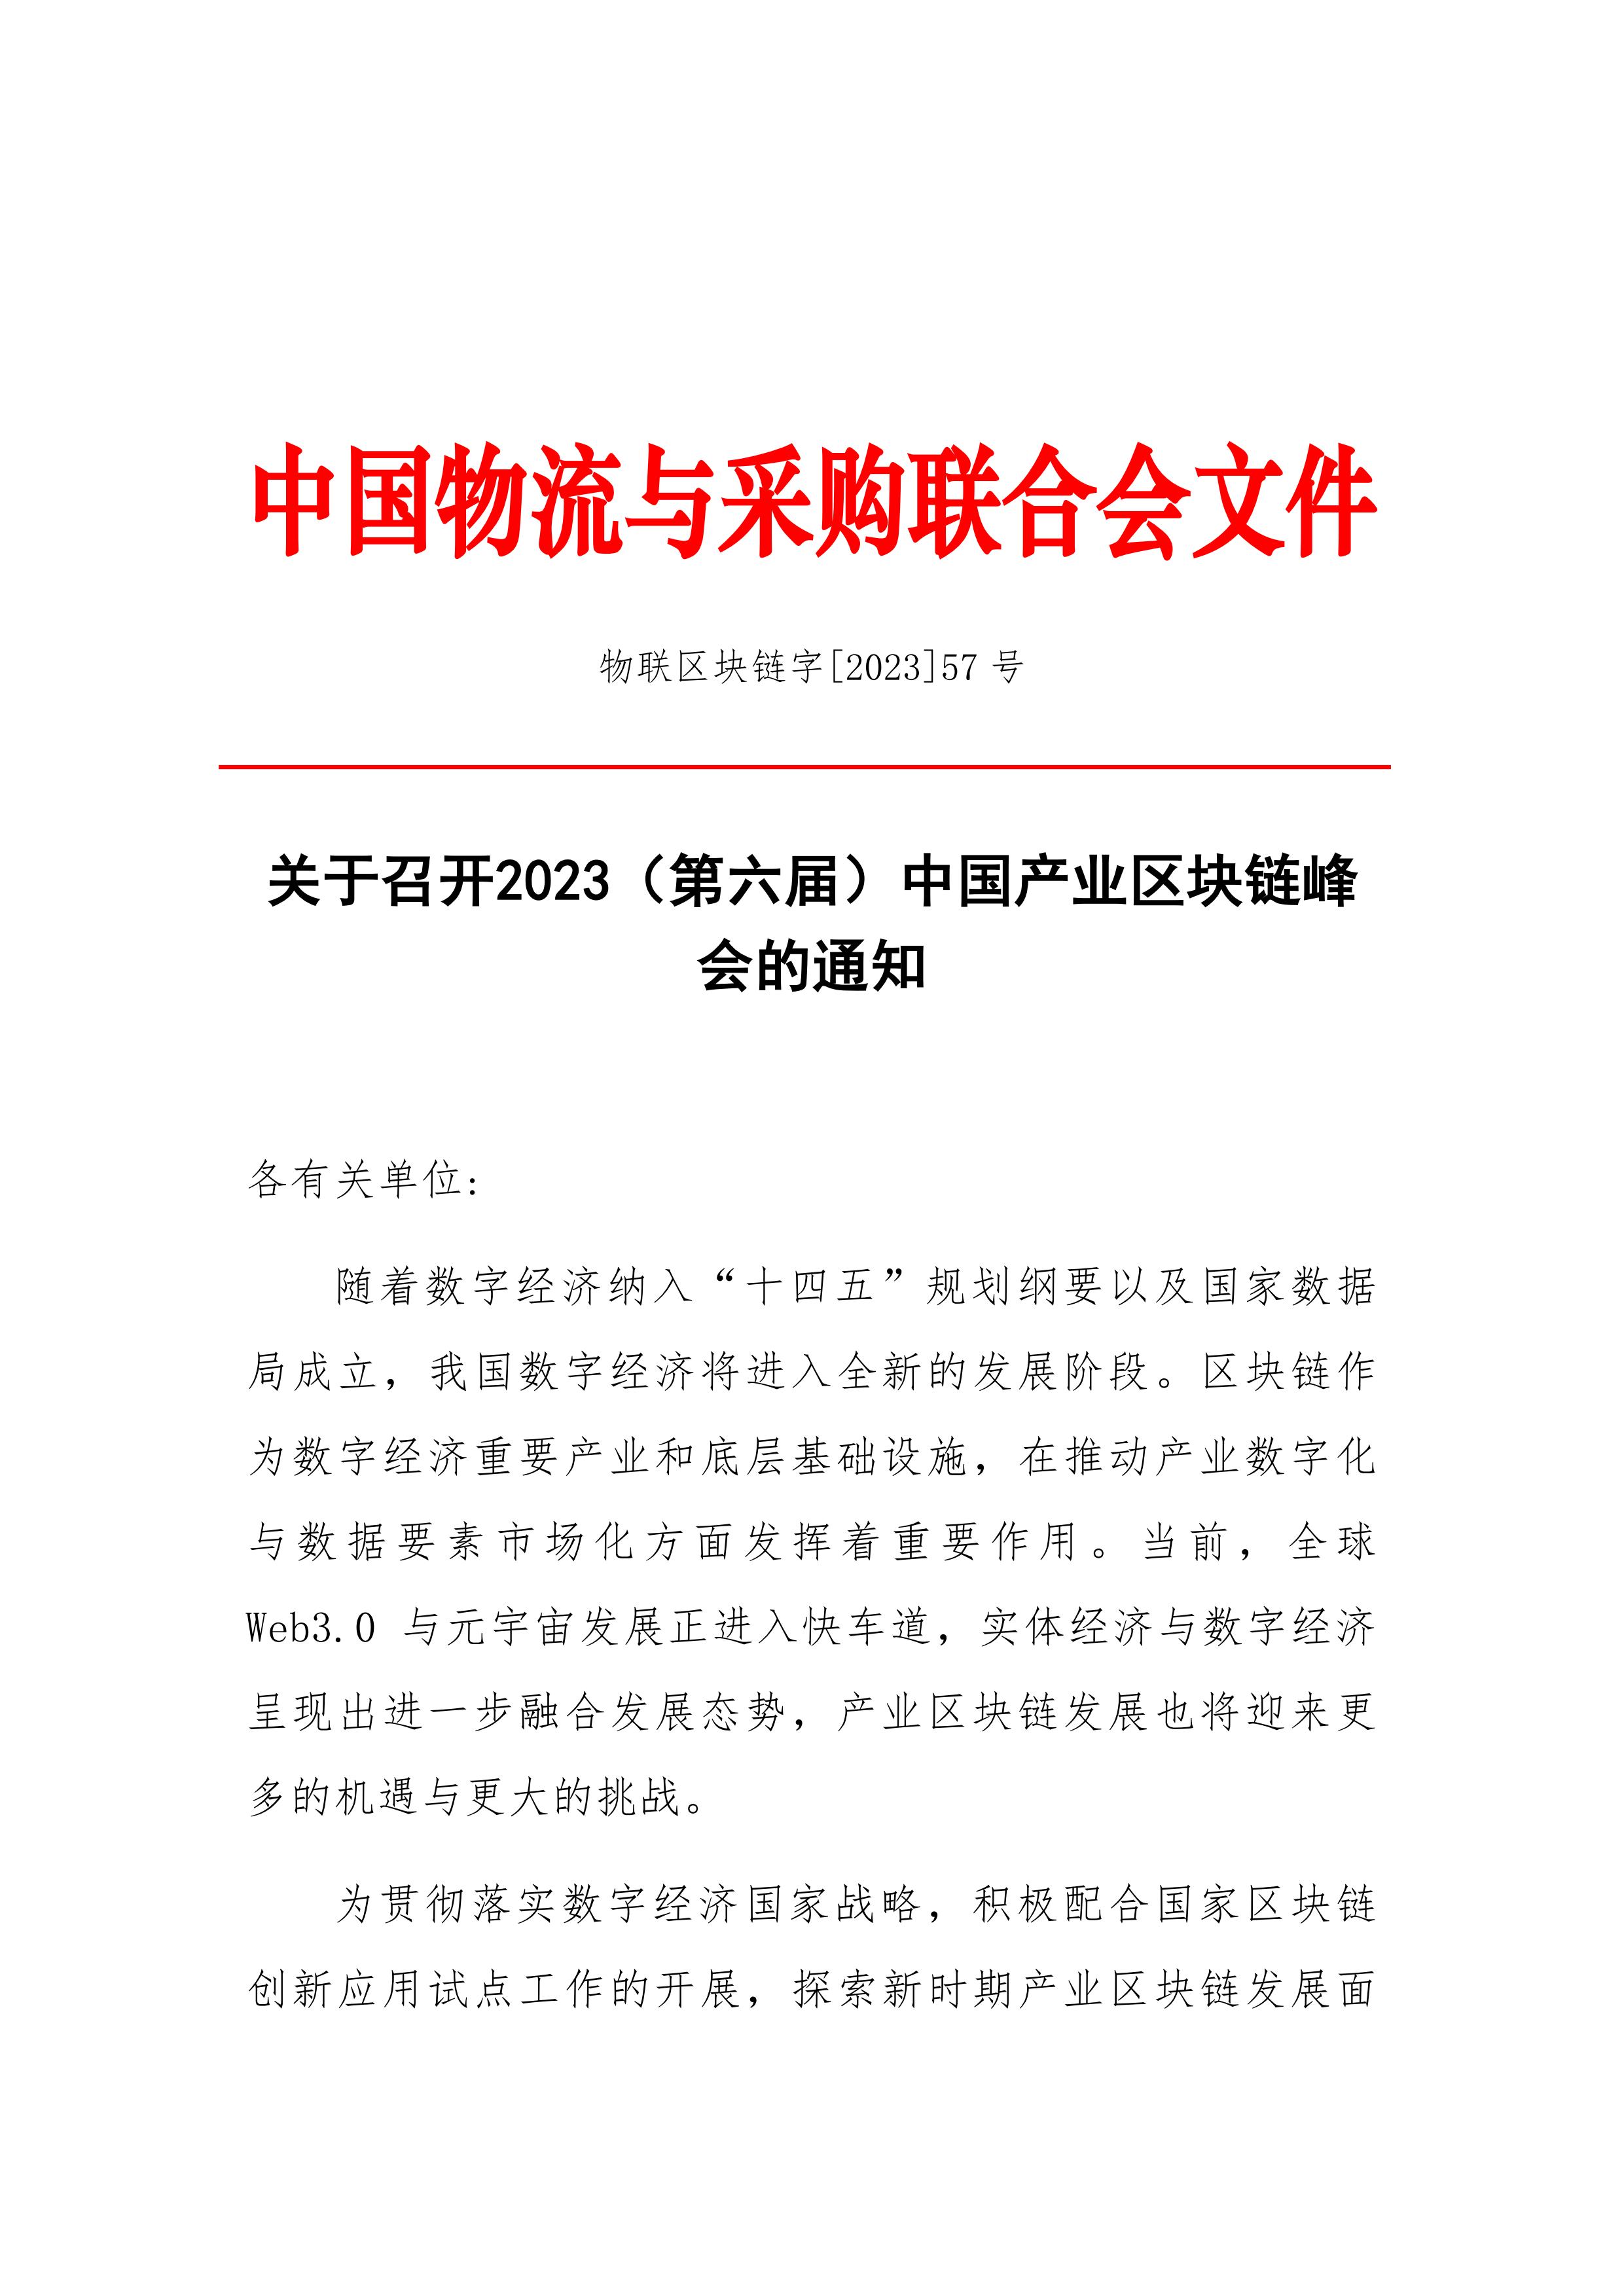 关于召开2023（第六届）中国产业区块链峰会的通知_01.jpg